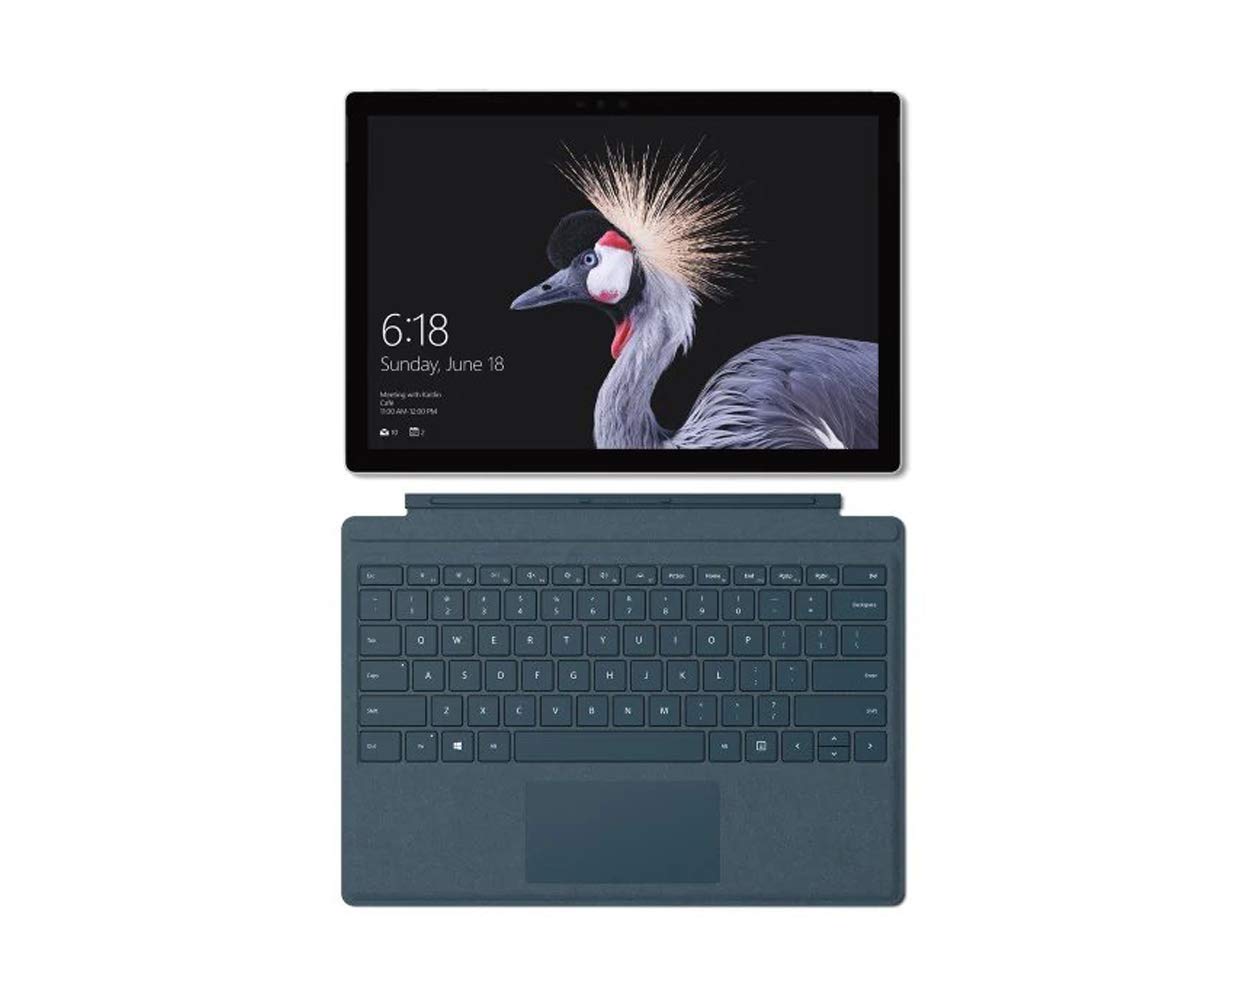 Microsoft Surface Pro, Model 1796, 2-in-1 Tablet Laptop (FJU-00001) Intel Core i5, 4GB RAM, 128GB SSD, 12.3-in PixelSense Multi-Touch, Win10 Pro